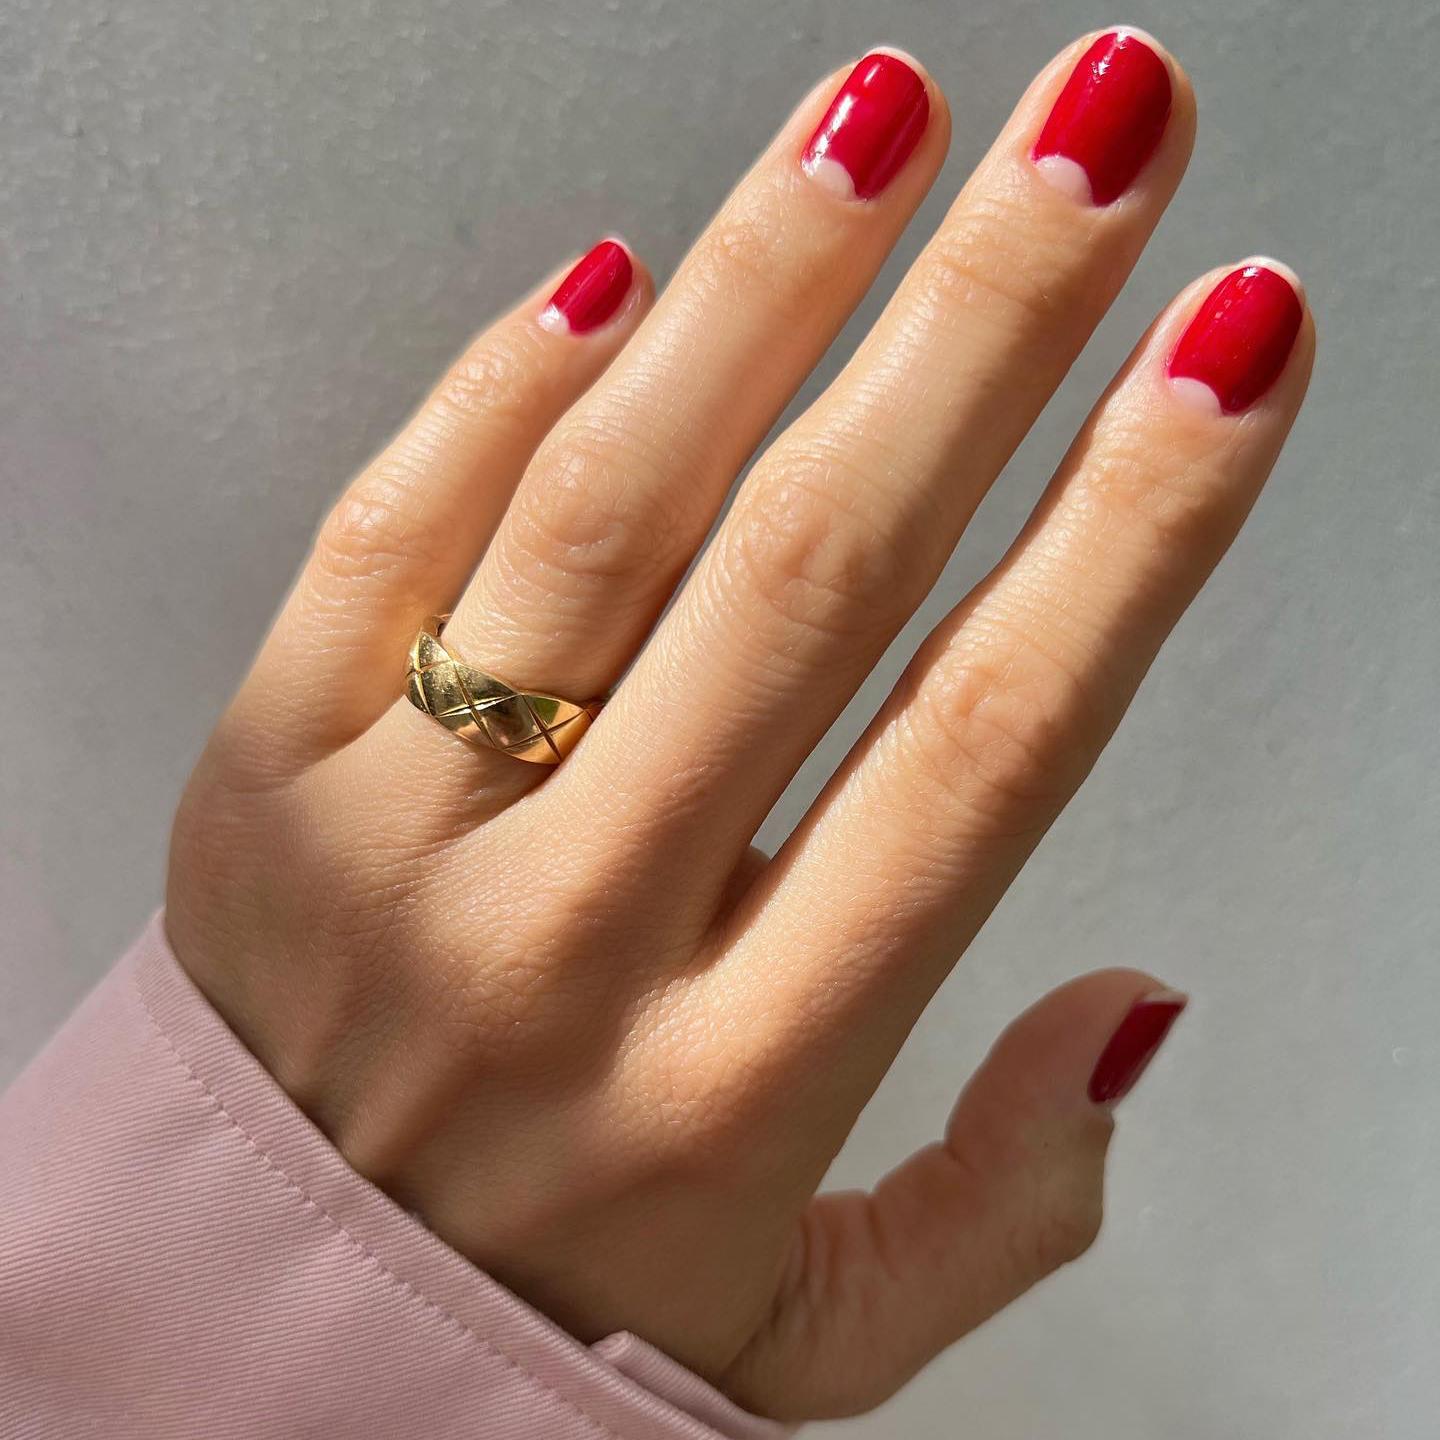 Imagen de una mano con la manicura hecha en color rojo con las semilunas sin esmalte.